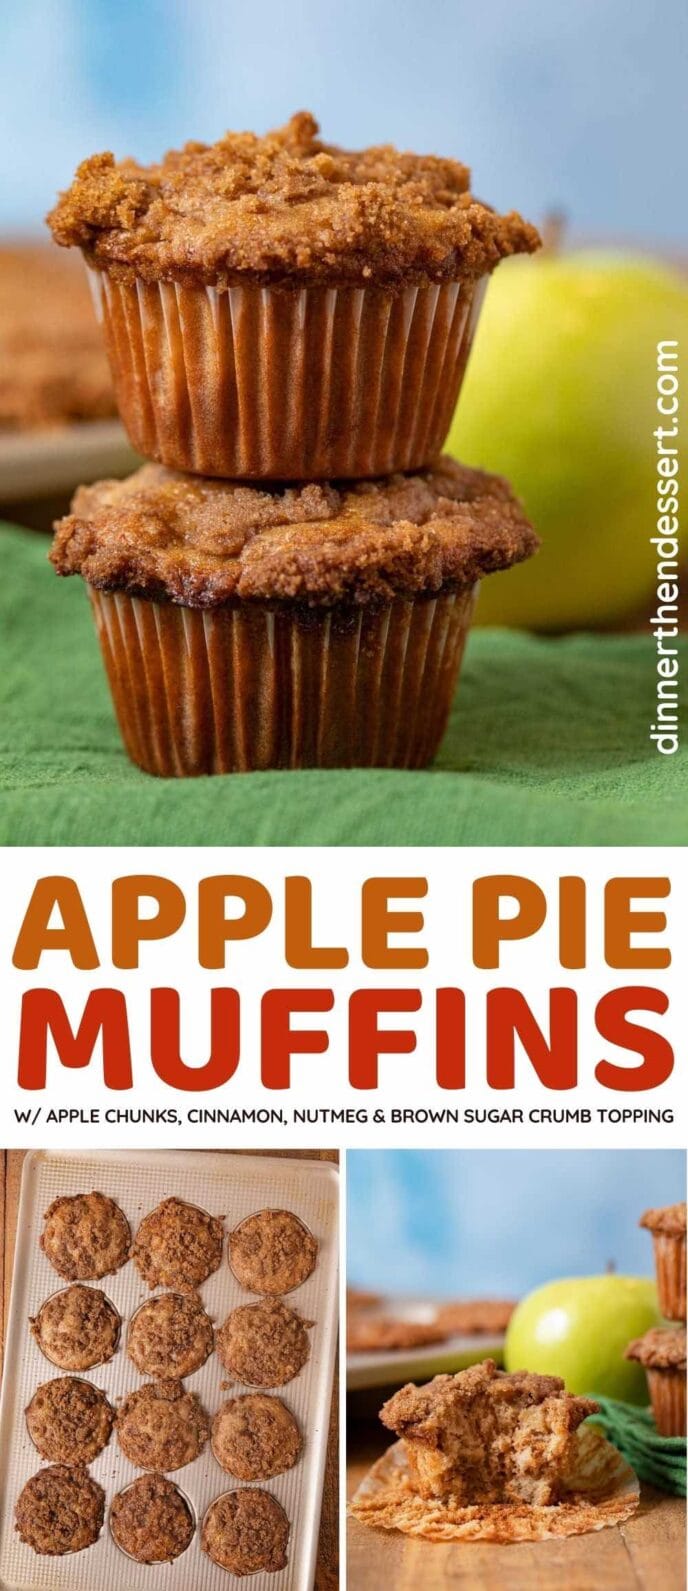 Spiced Apple Pie Muffins